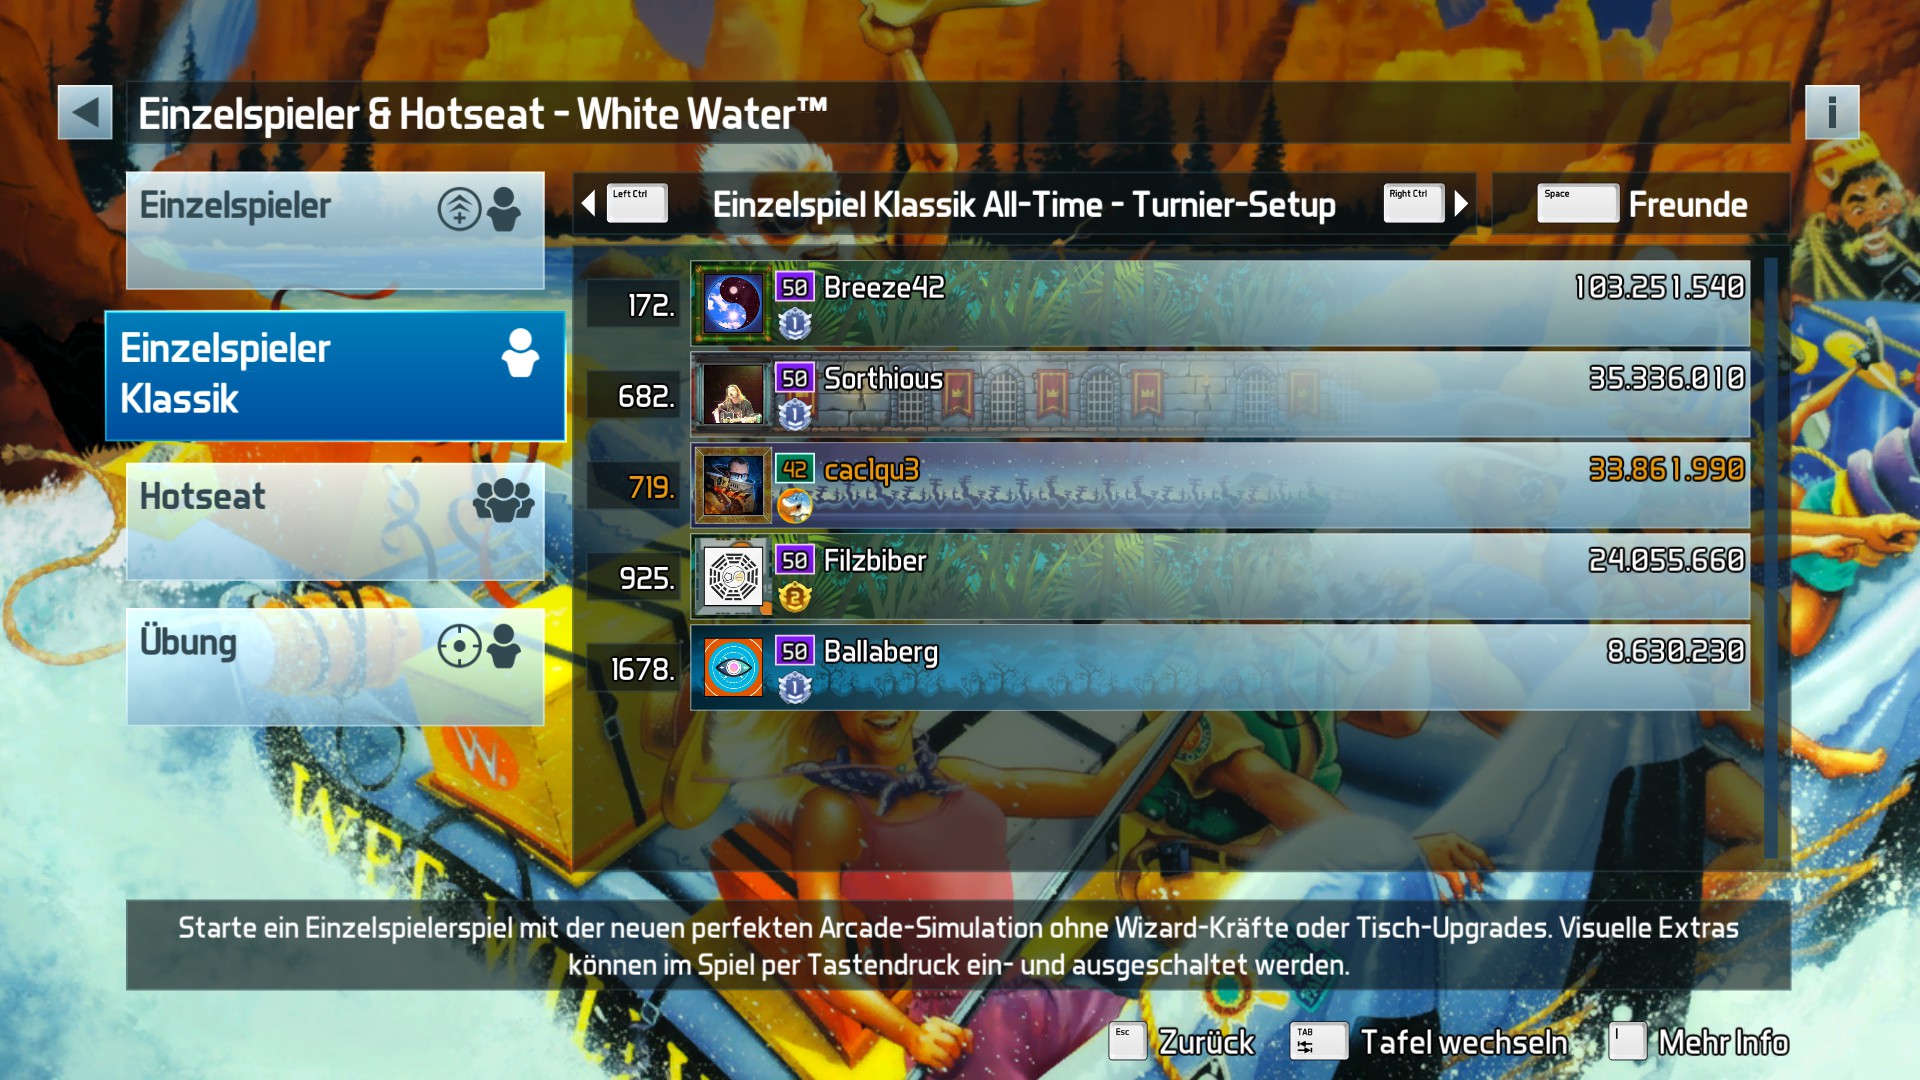 e2e4: Pinball FX3: White Water [Tournament] (PC) 33,861,990 points on 2022-05-20 17:47:55